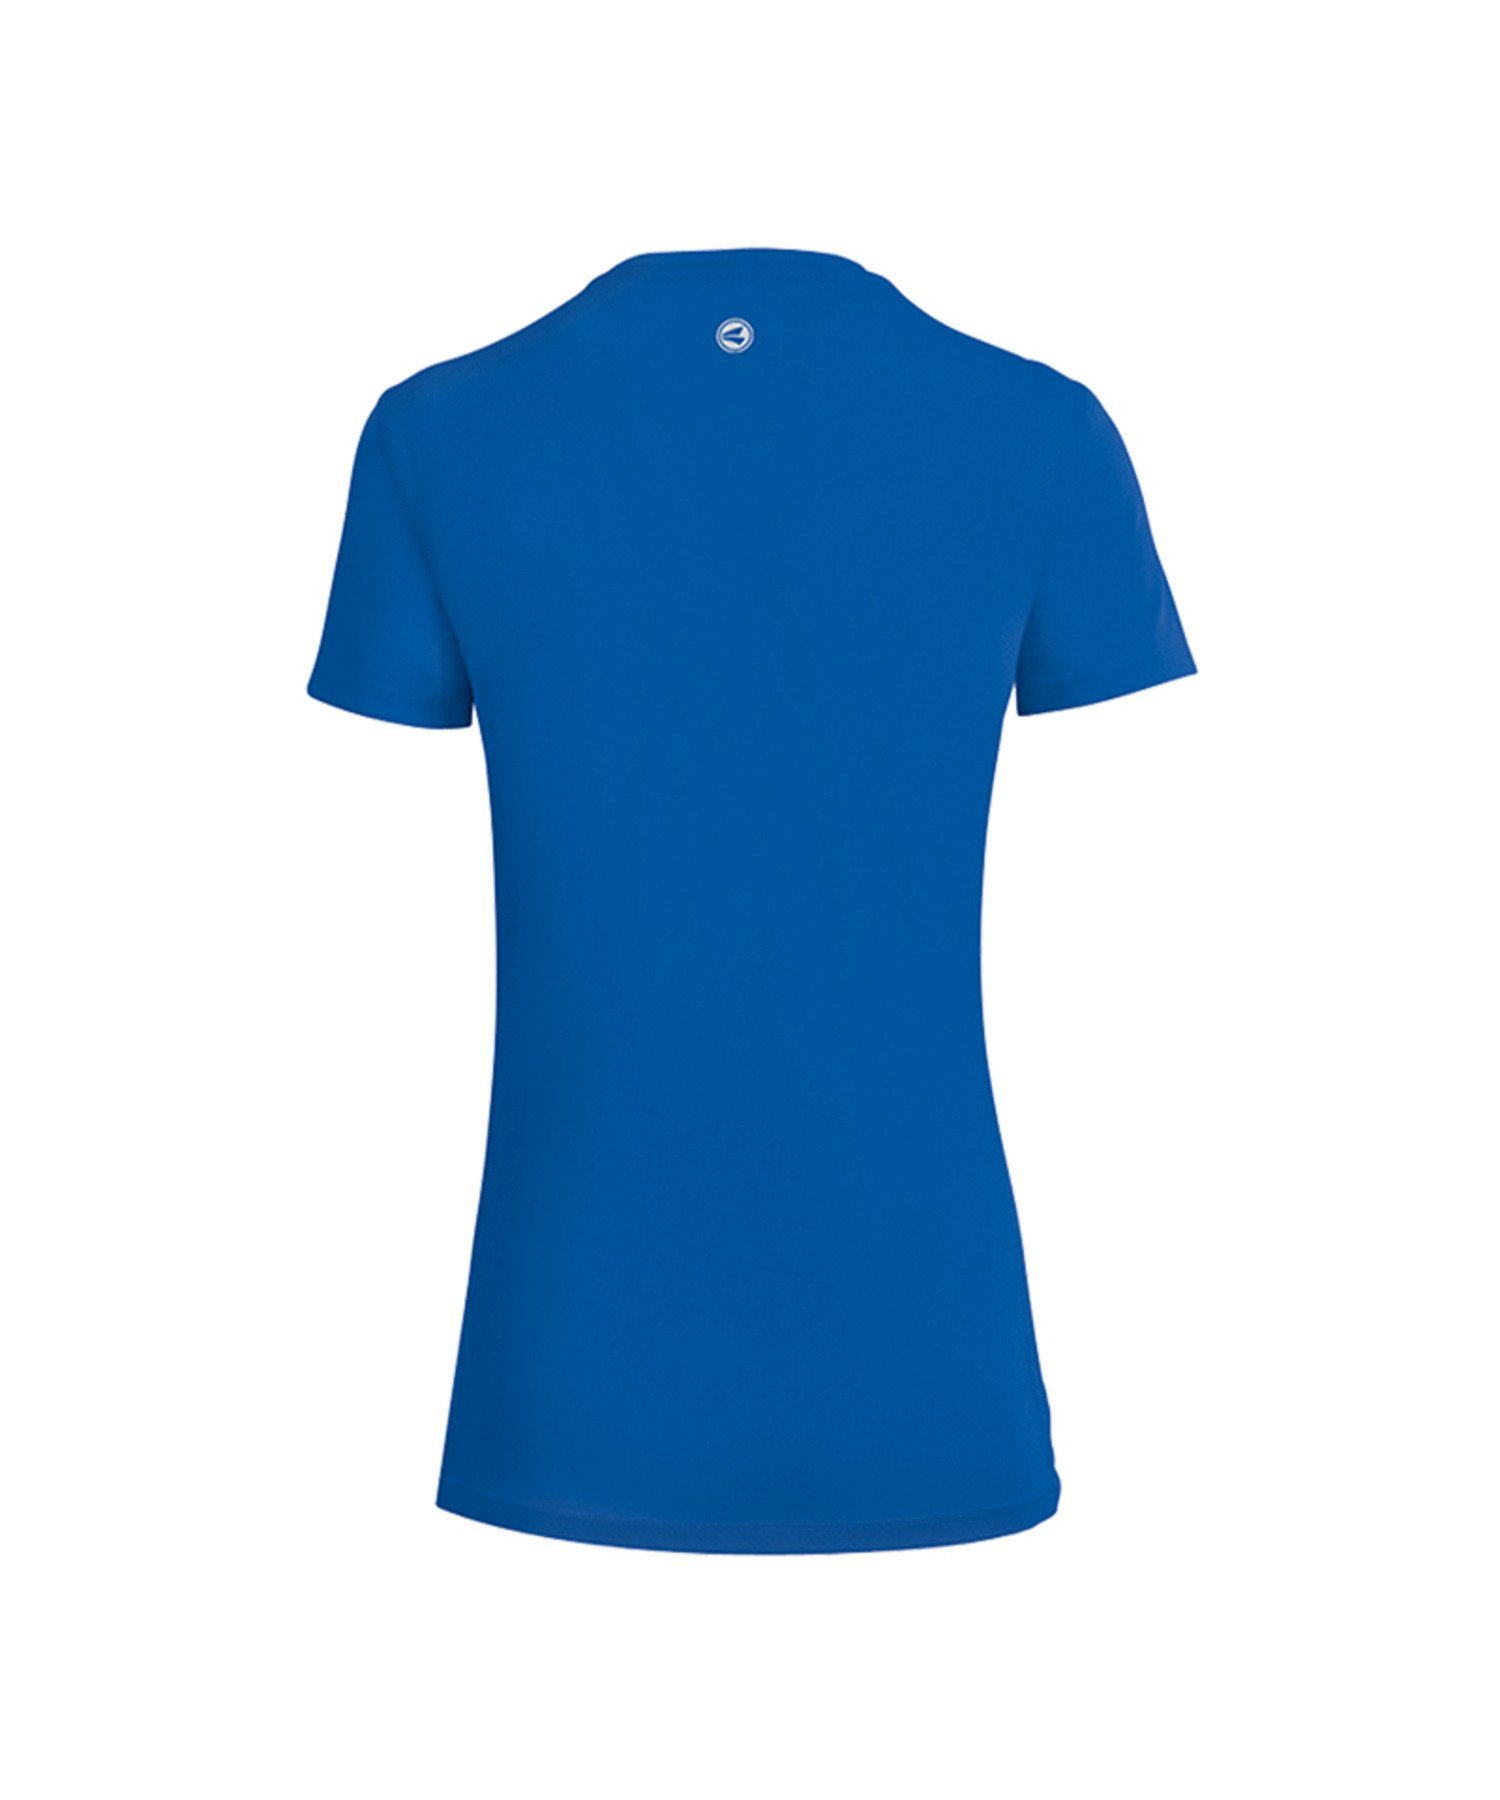 2.0 Jako T-Shirt Laufshirt Damen Blau default Running Run